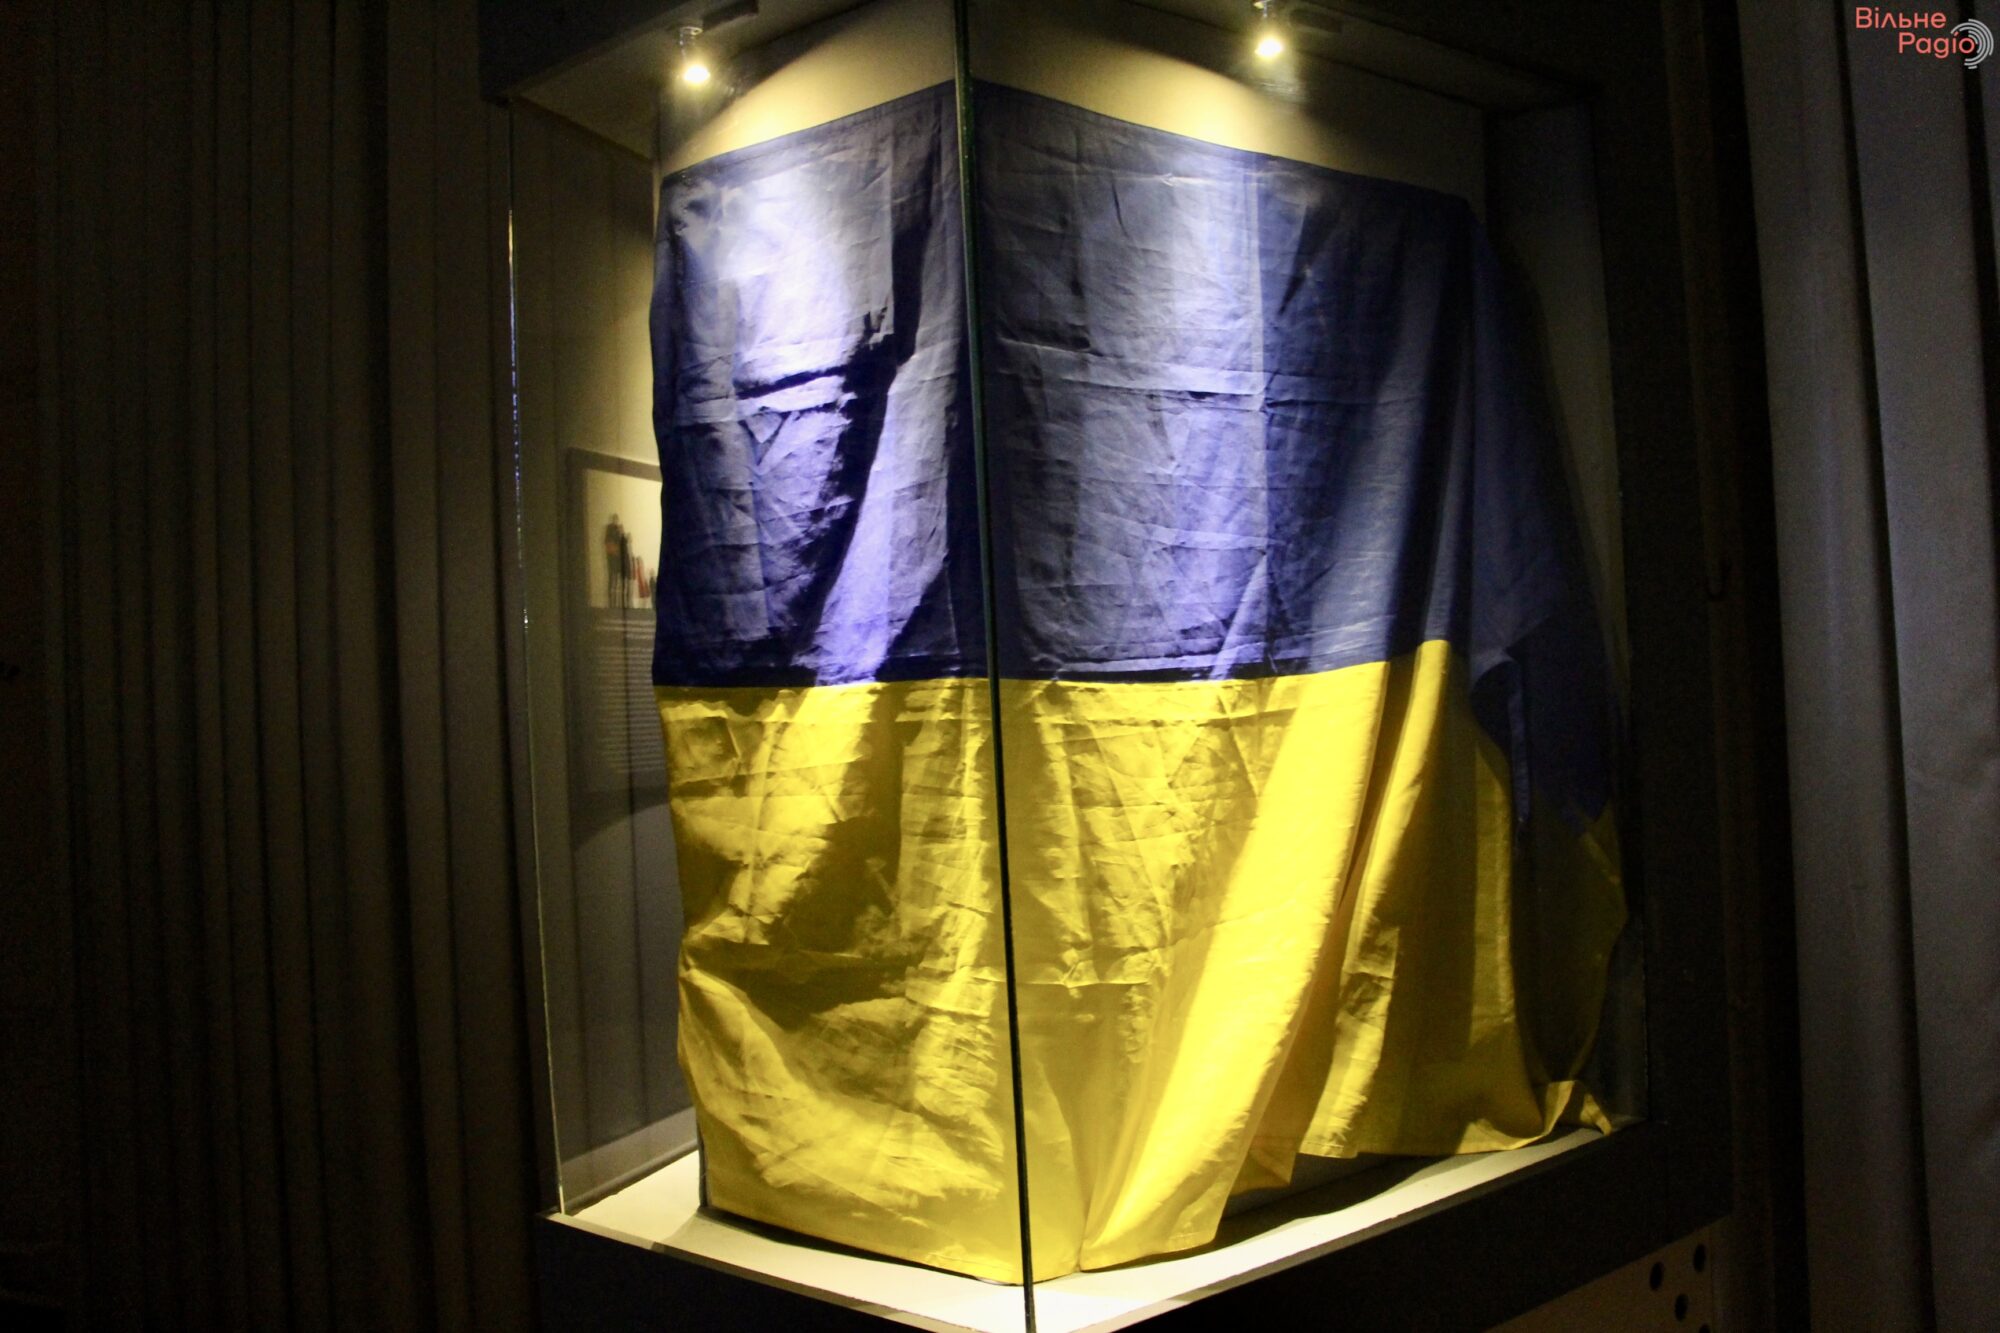 “Флаги Независимости”: фотоподборка государственных флагов, которые навсегда останутся частью украинской истории 4